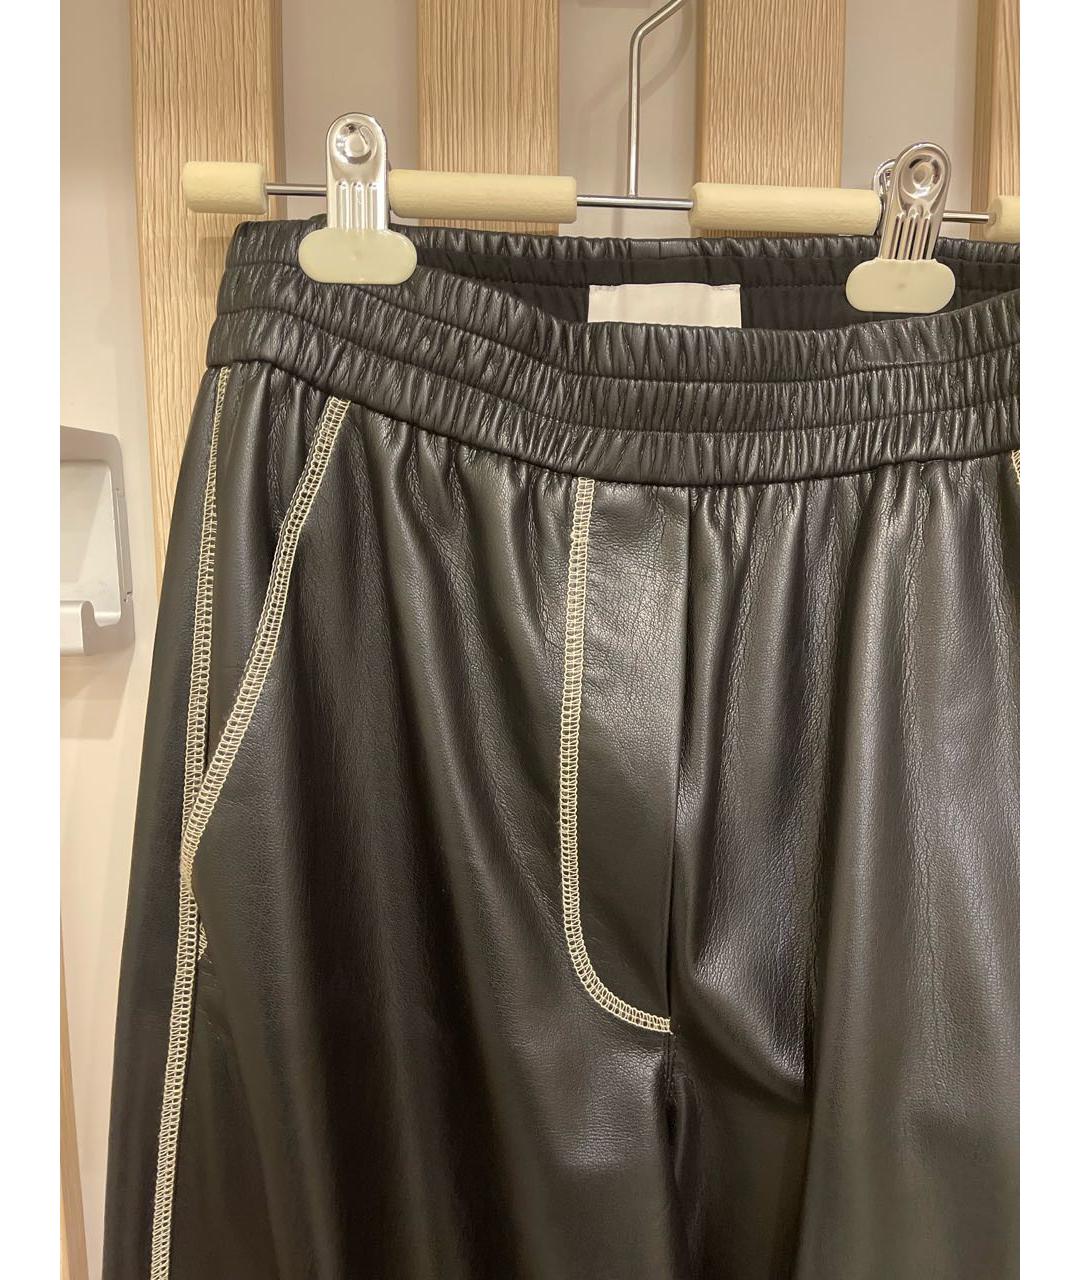 NANUSHKA Черные кожаные брюки широкие, фото 4